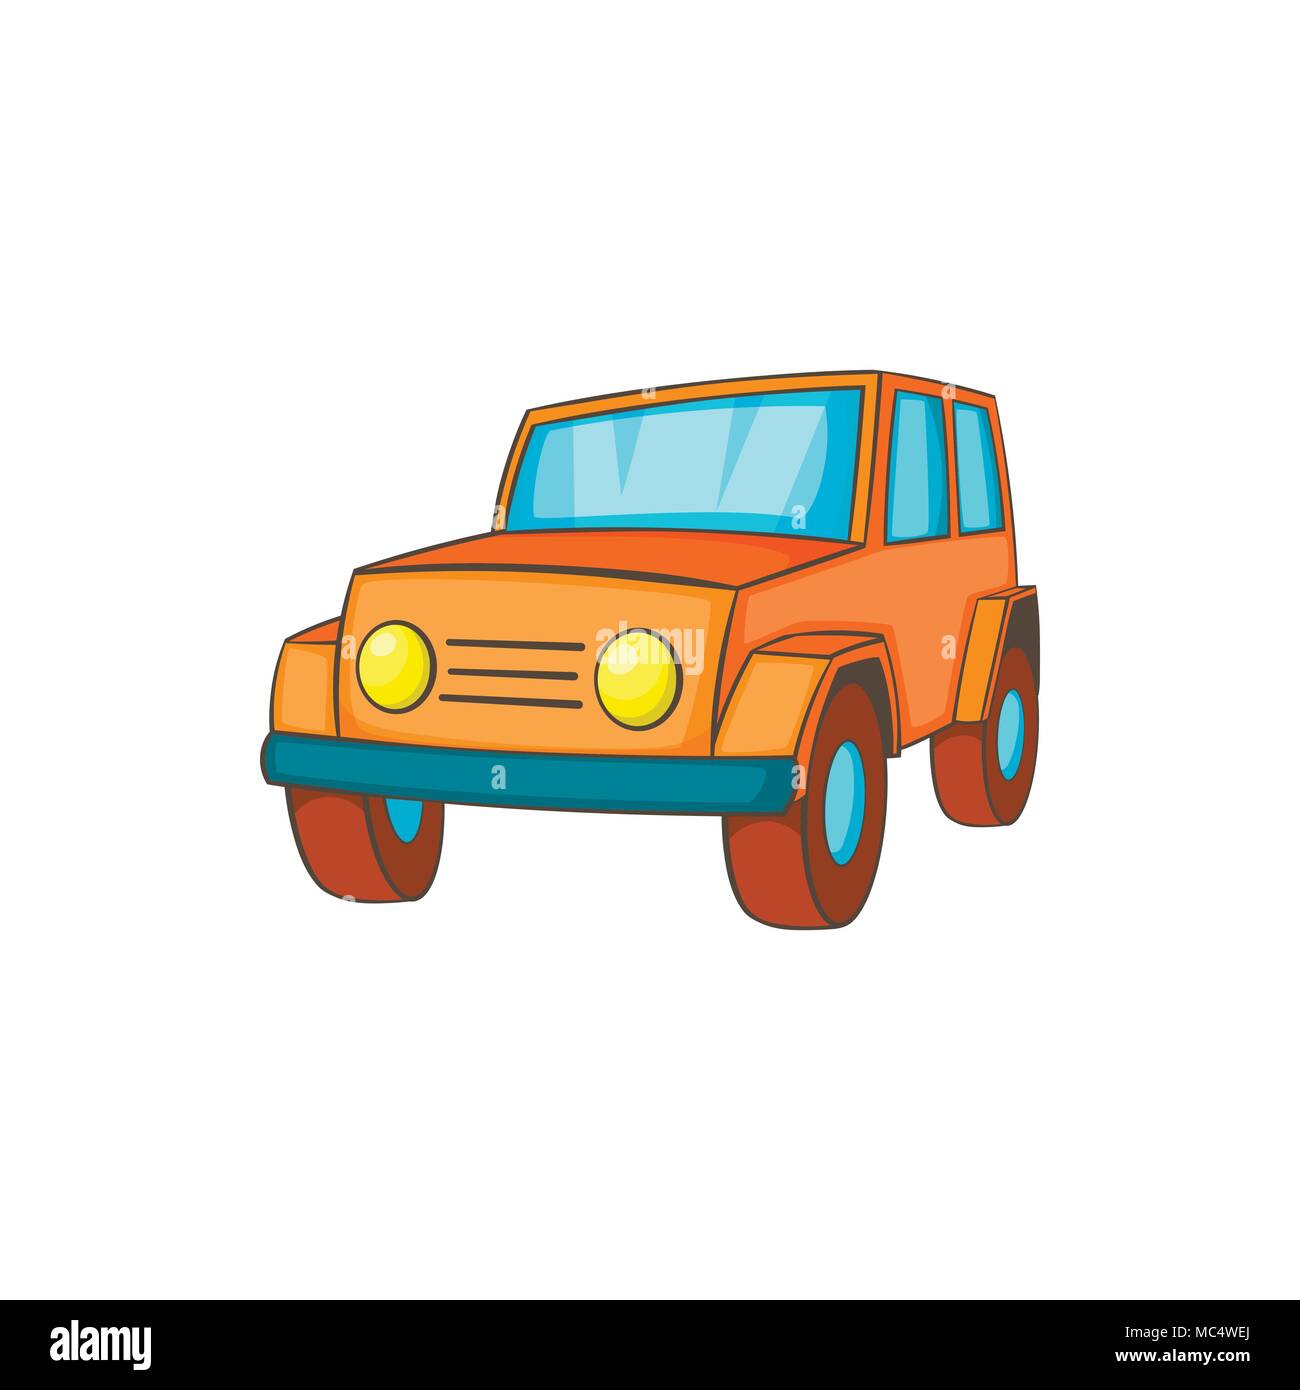 L'icône orange dans un style cartoon jeep Illustration de Vecteur